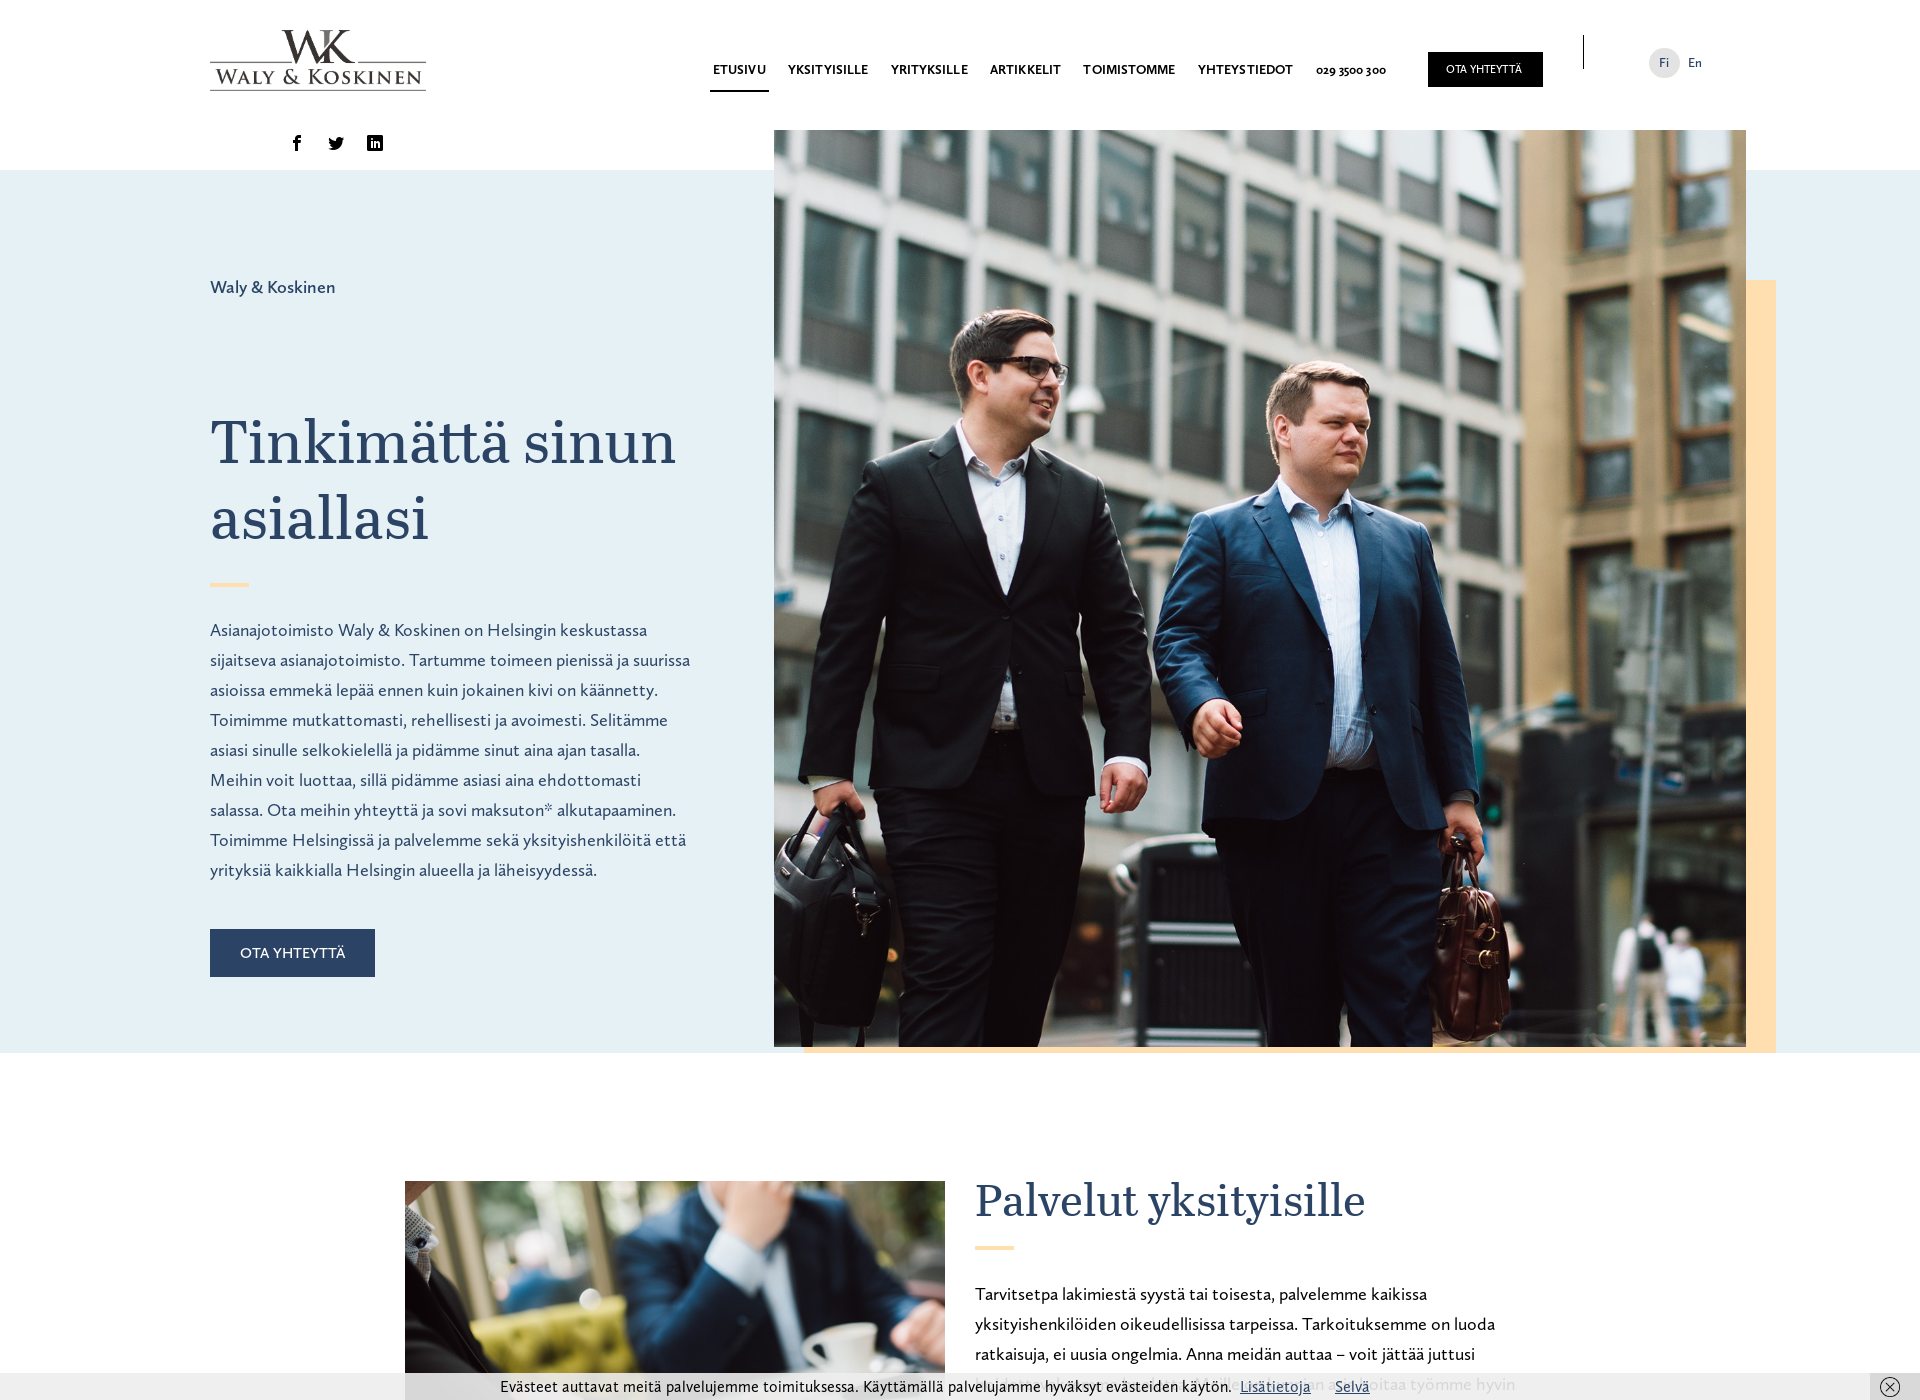 Näyttökuva wklaki.fi